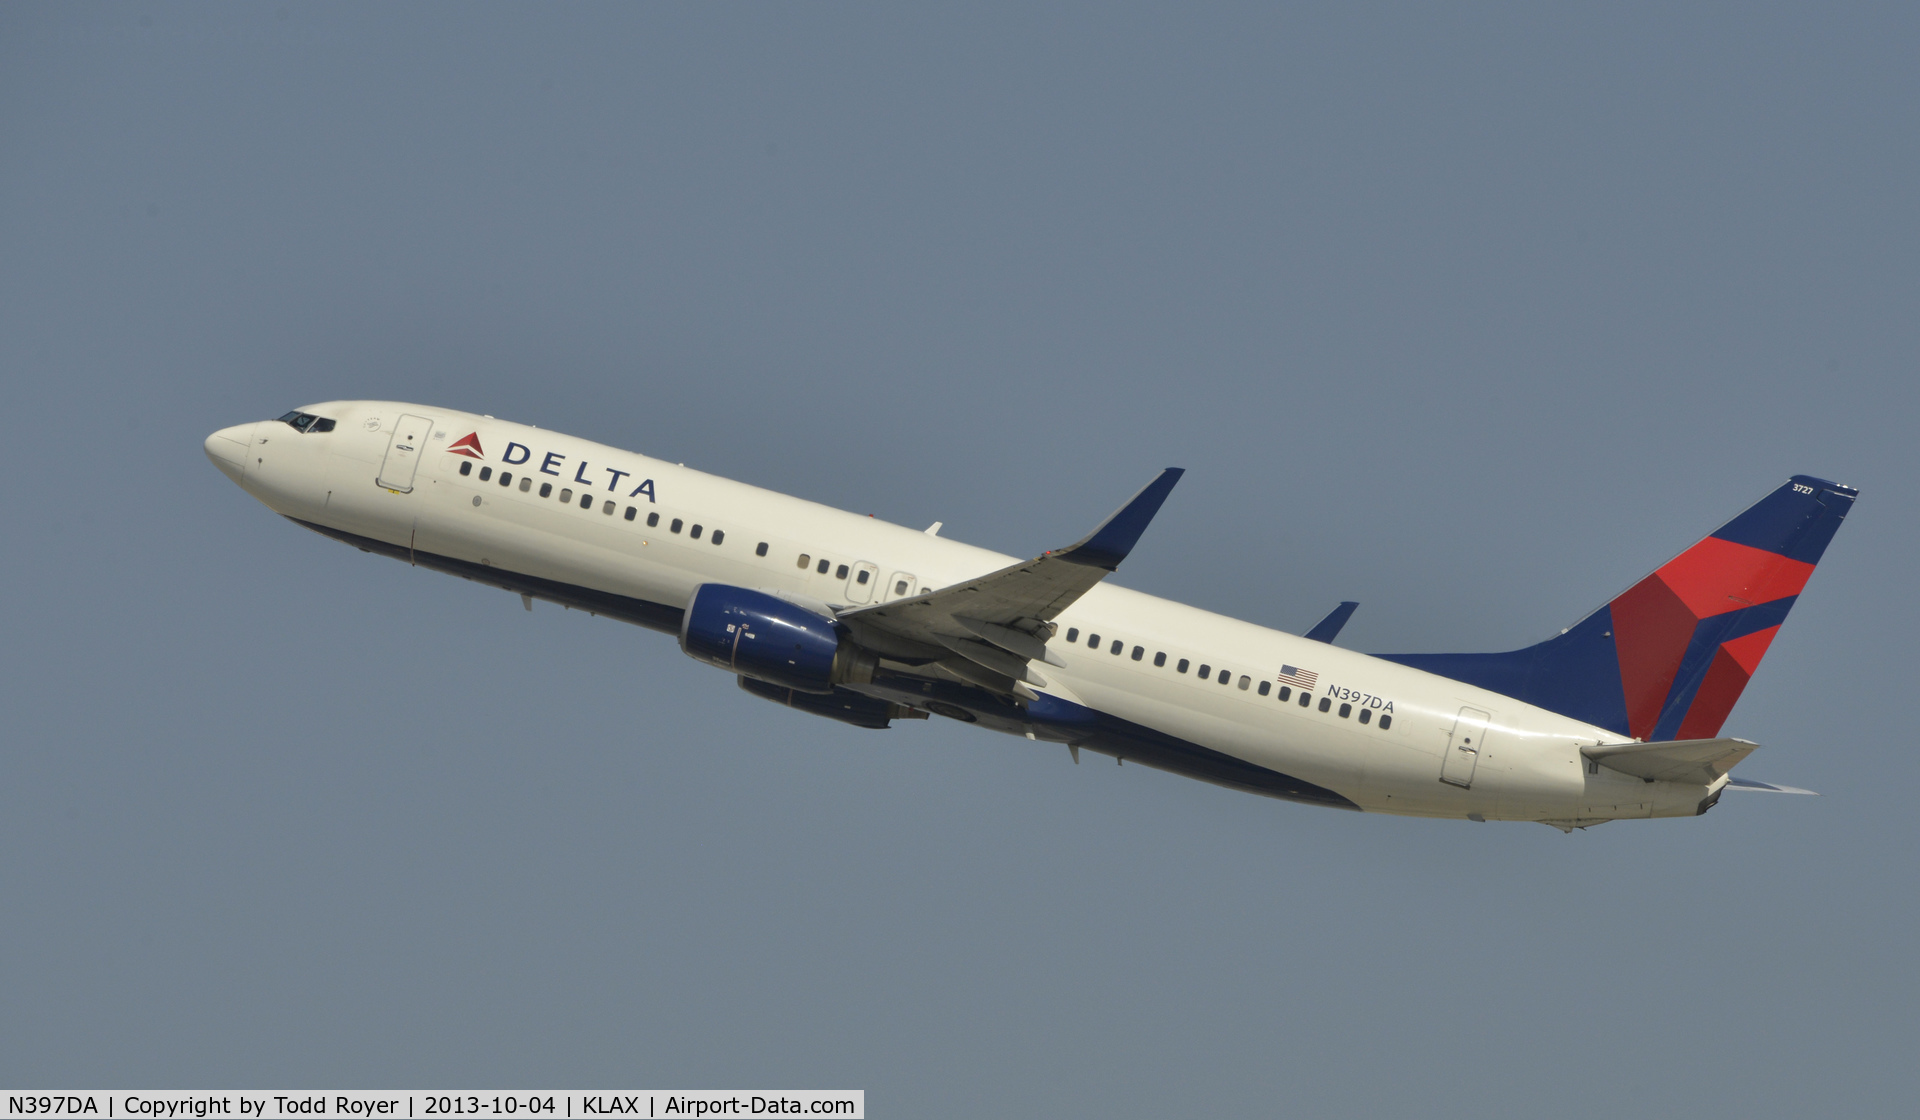 N397DA, 2000 Boeing 737-832 C/N 30537, Departing LAX